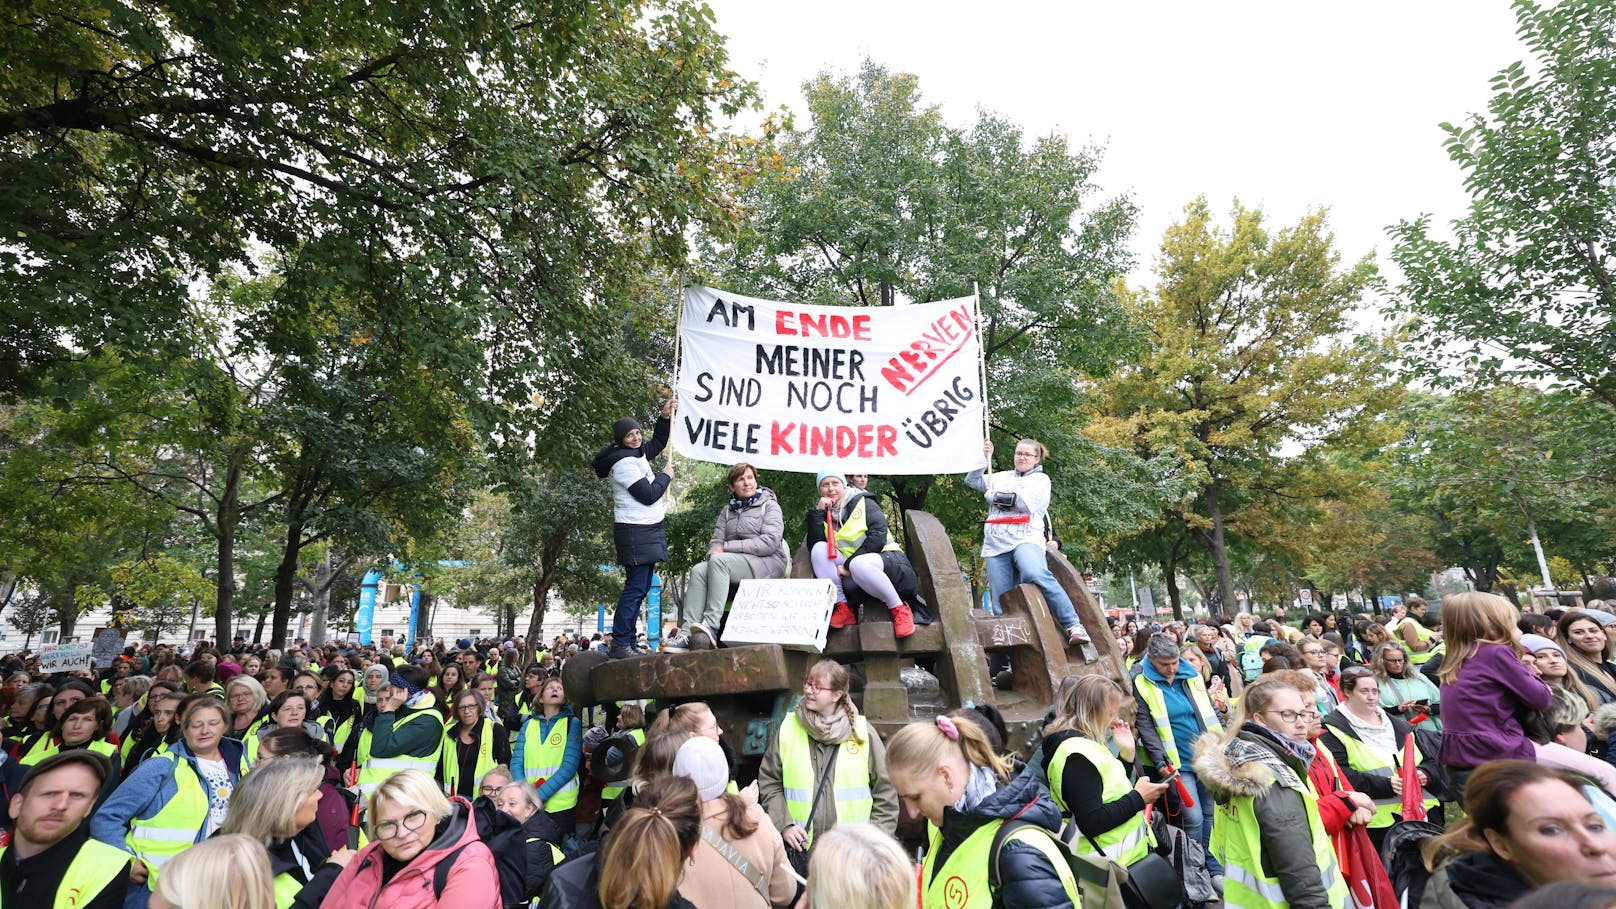 Am Dienstag protestierten rund 10.000 Kindergarten-Pädagogen für bessere Arbeitsbedingungen.